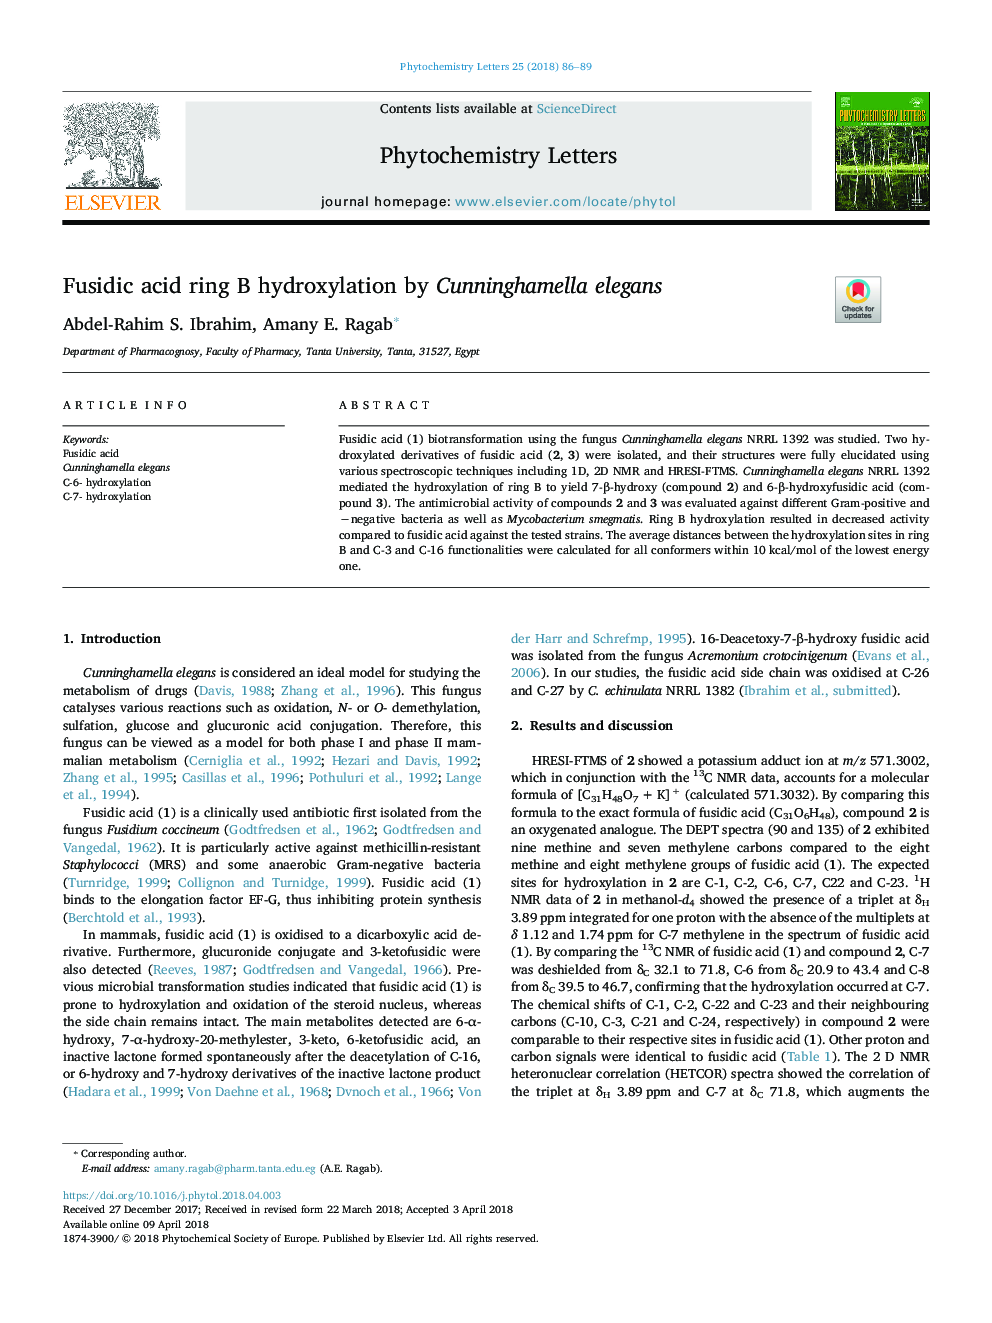 Fusidic acid ring B hydroxylation by Cunninghamella elegans